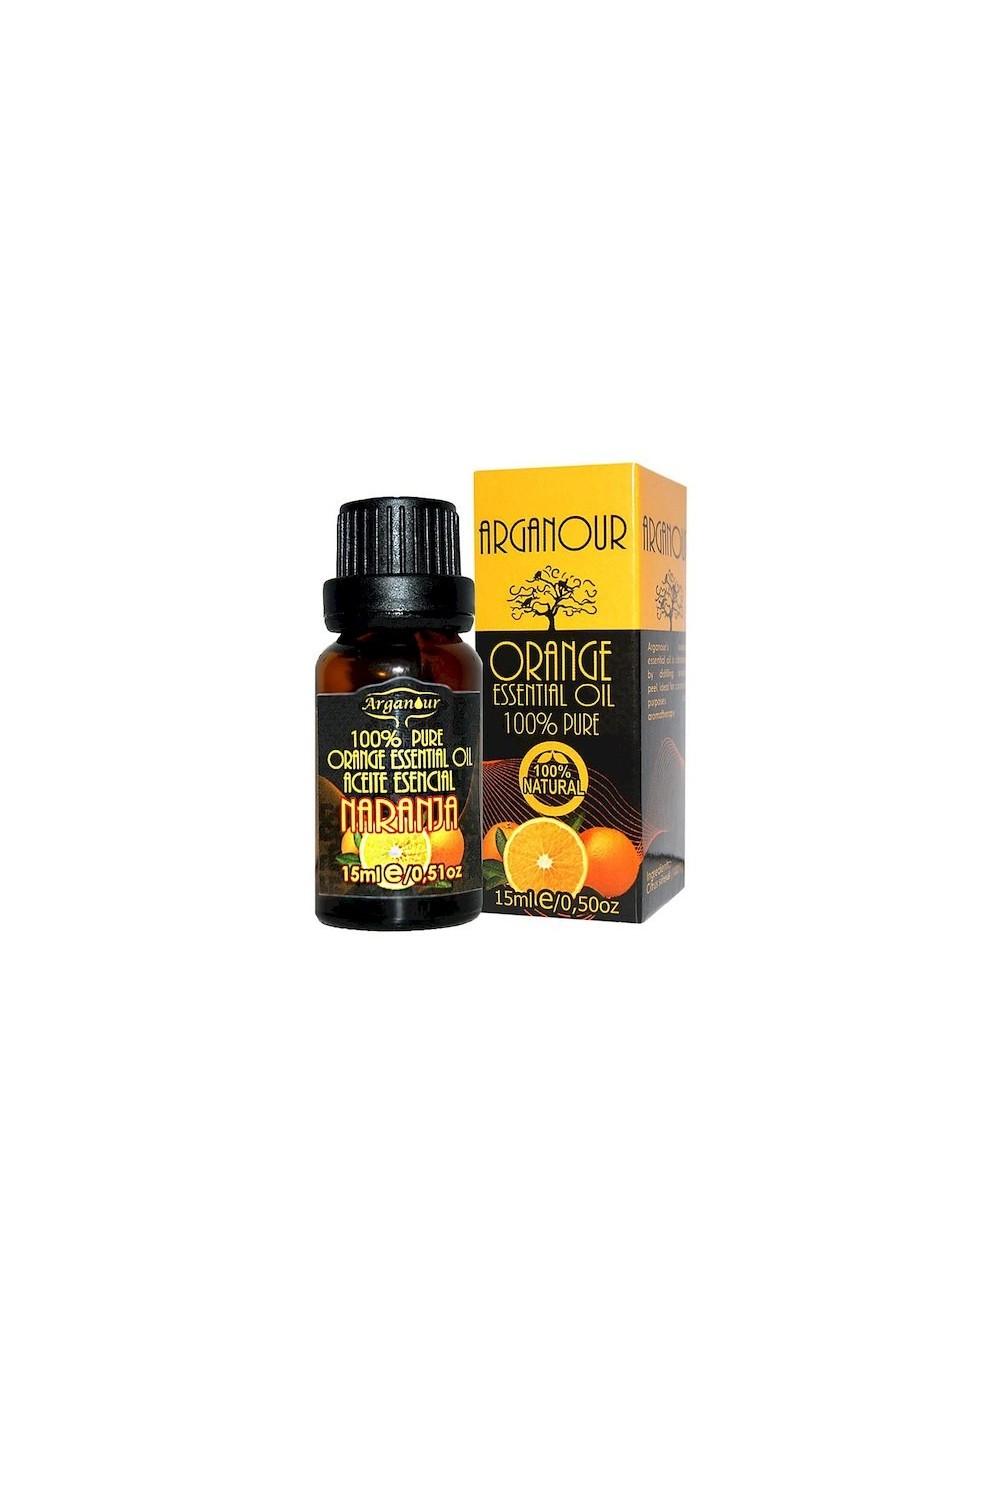 Arganour Orange Essential Oil 15ml